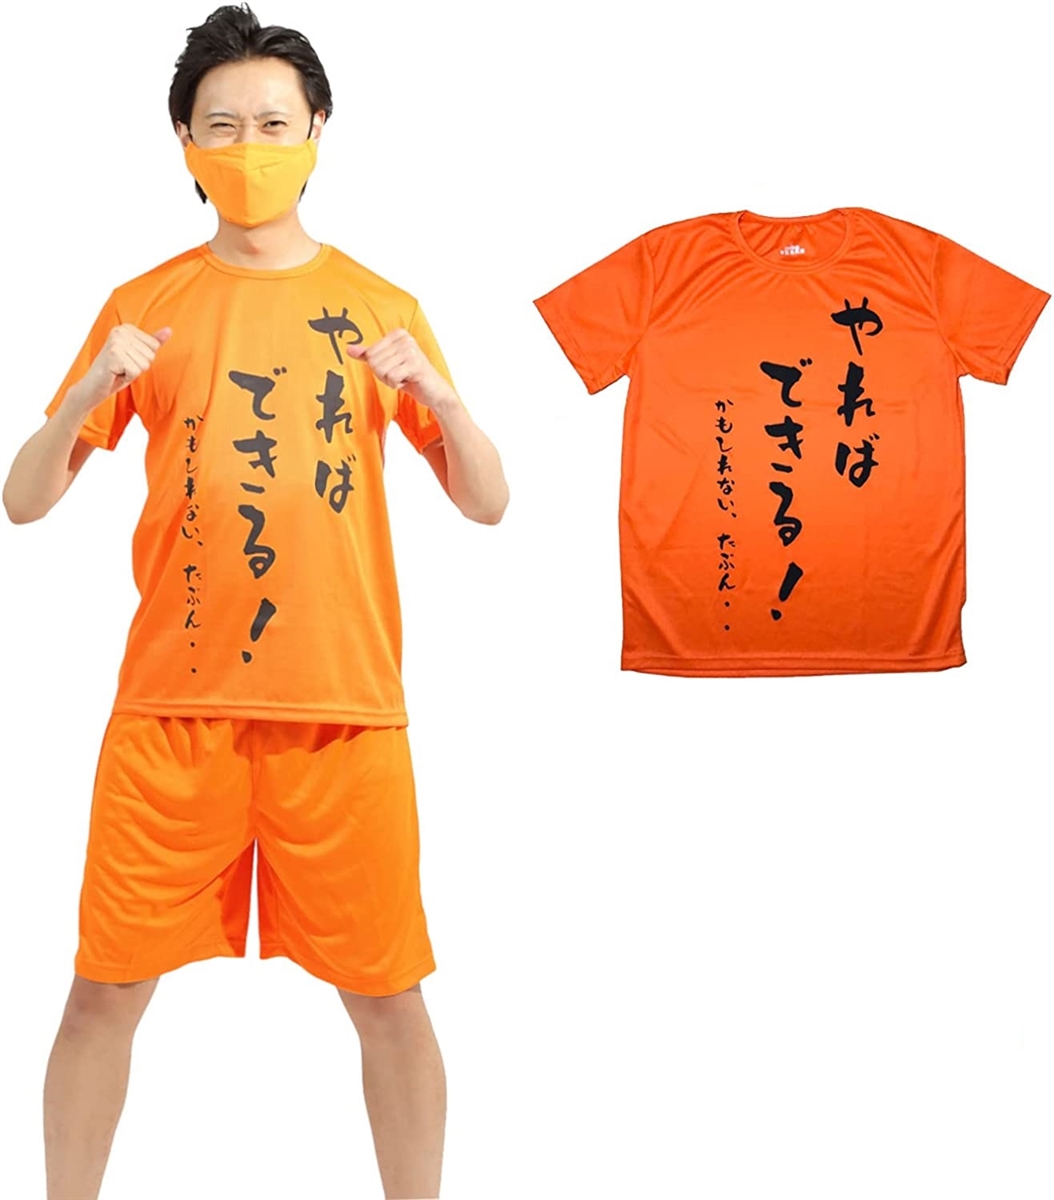 おもしろtシャツ 文字 コスプレ オレンジ( オレンジ,  XL)